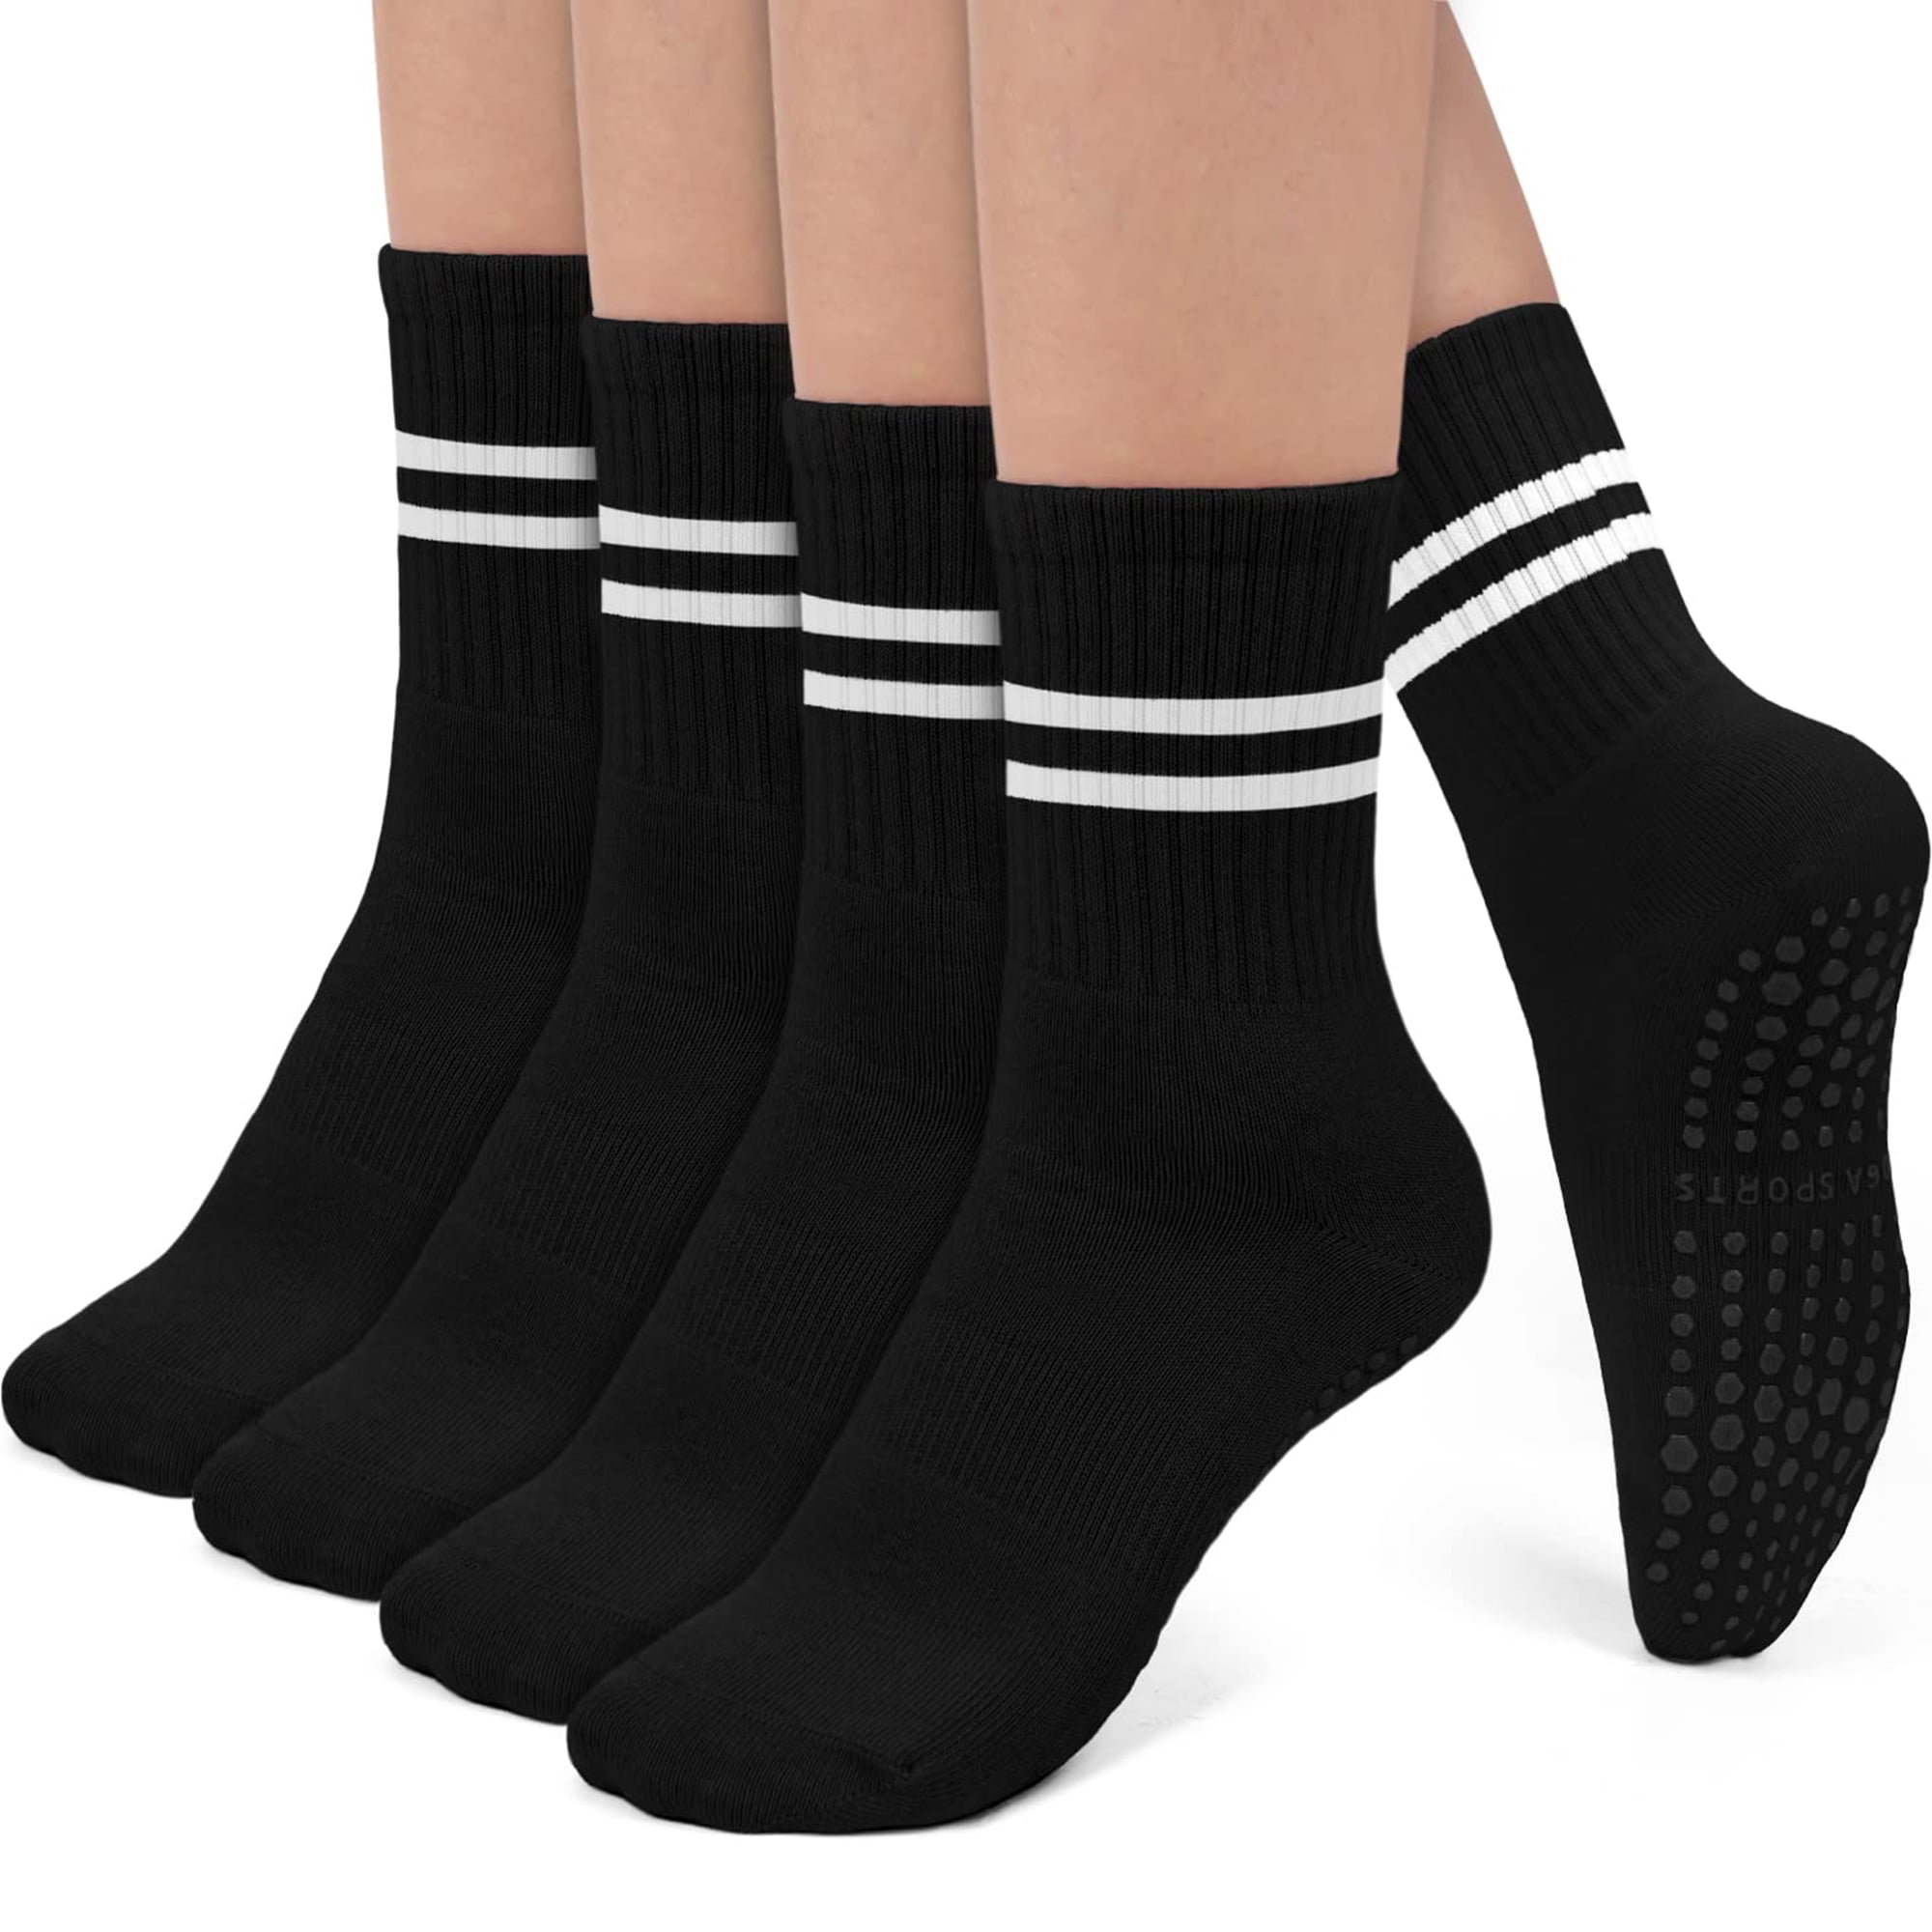 New Style 4 Pairs Socks For Women Pilates Socks Non Slip Grip